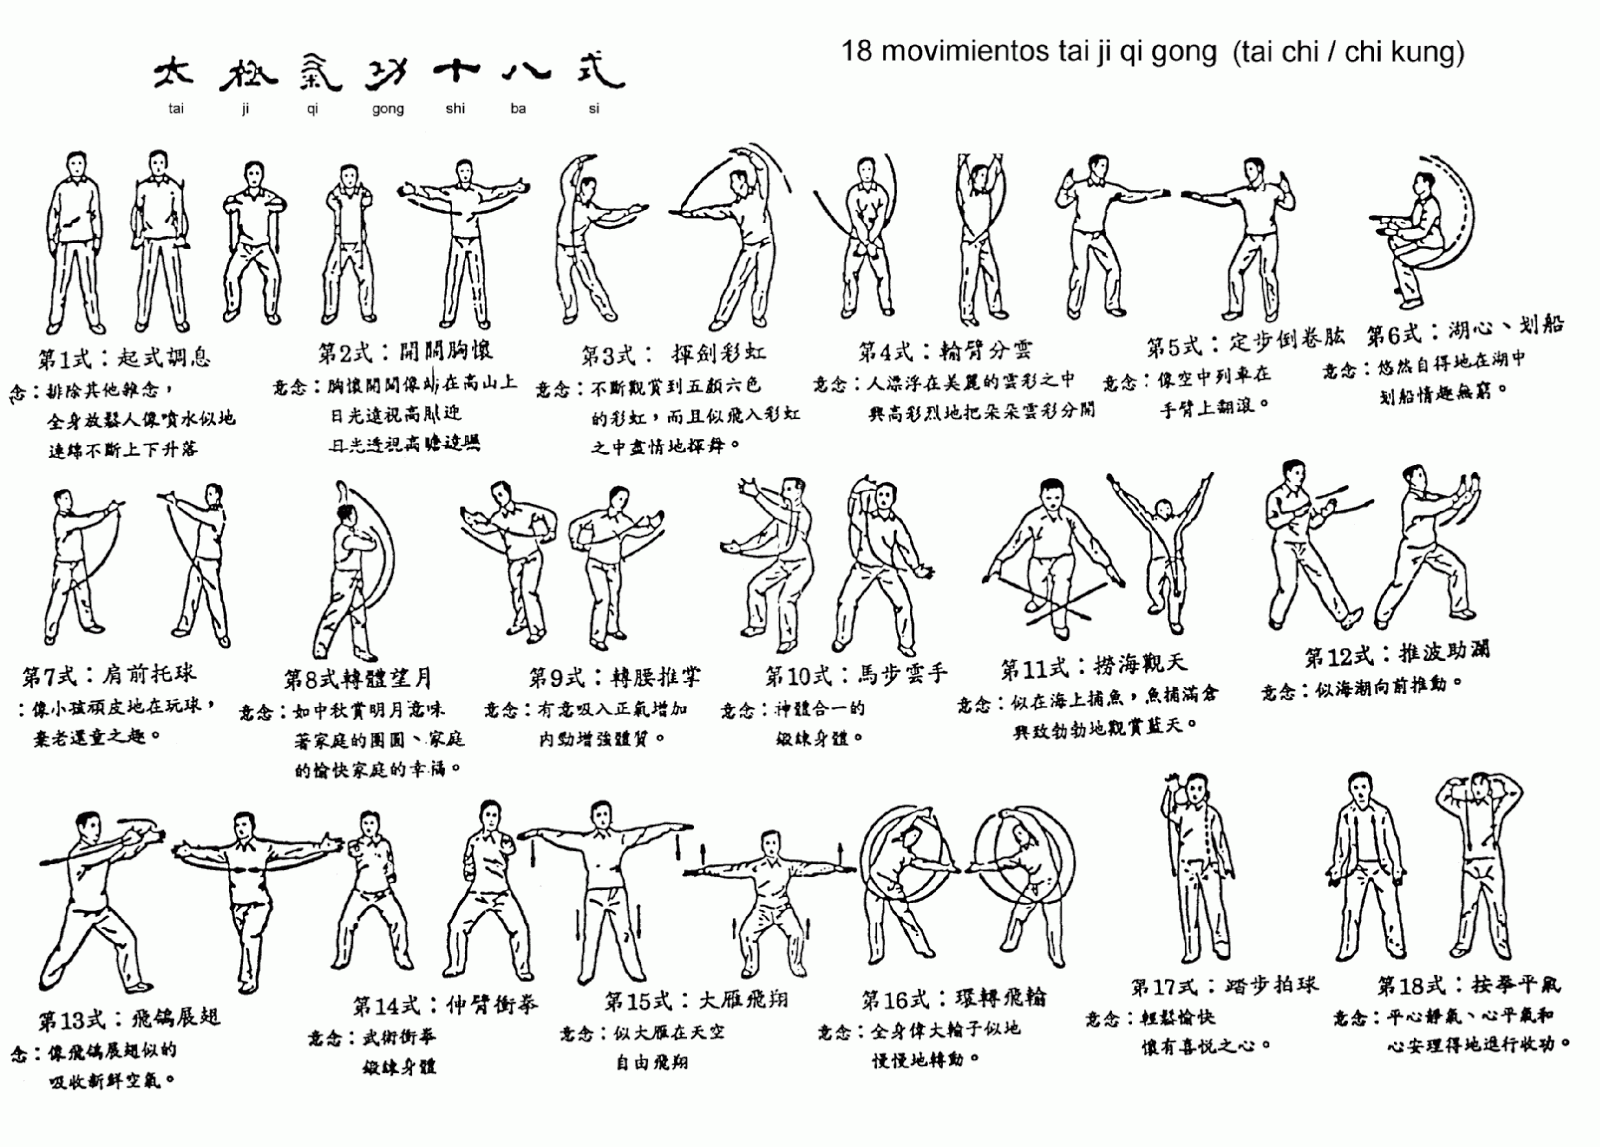 Tai Chi Movement Chart